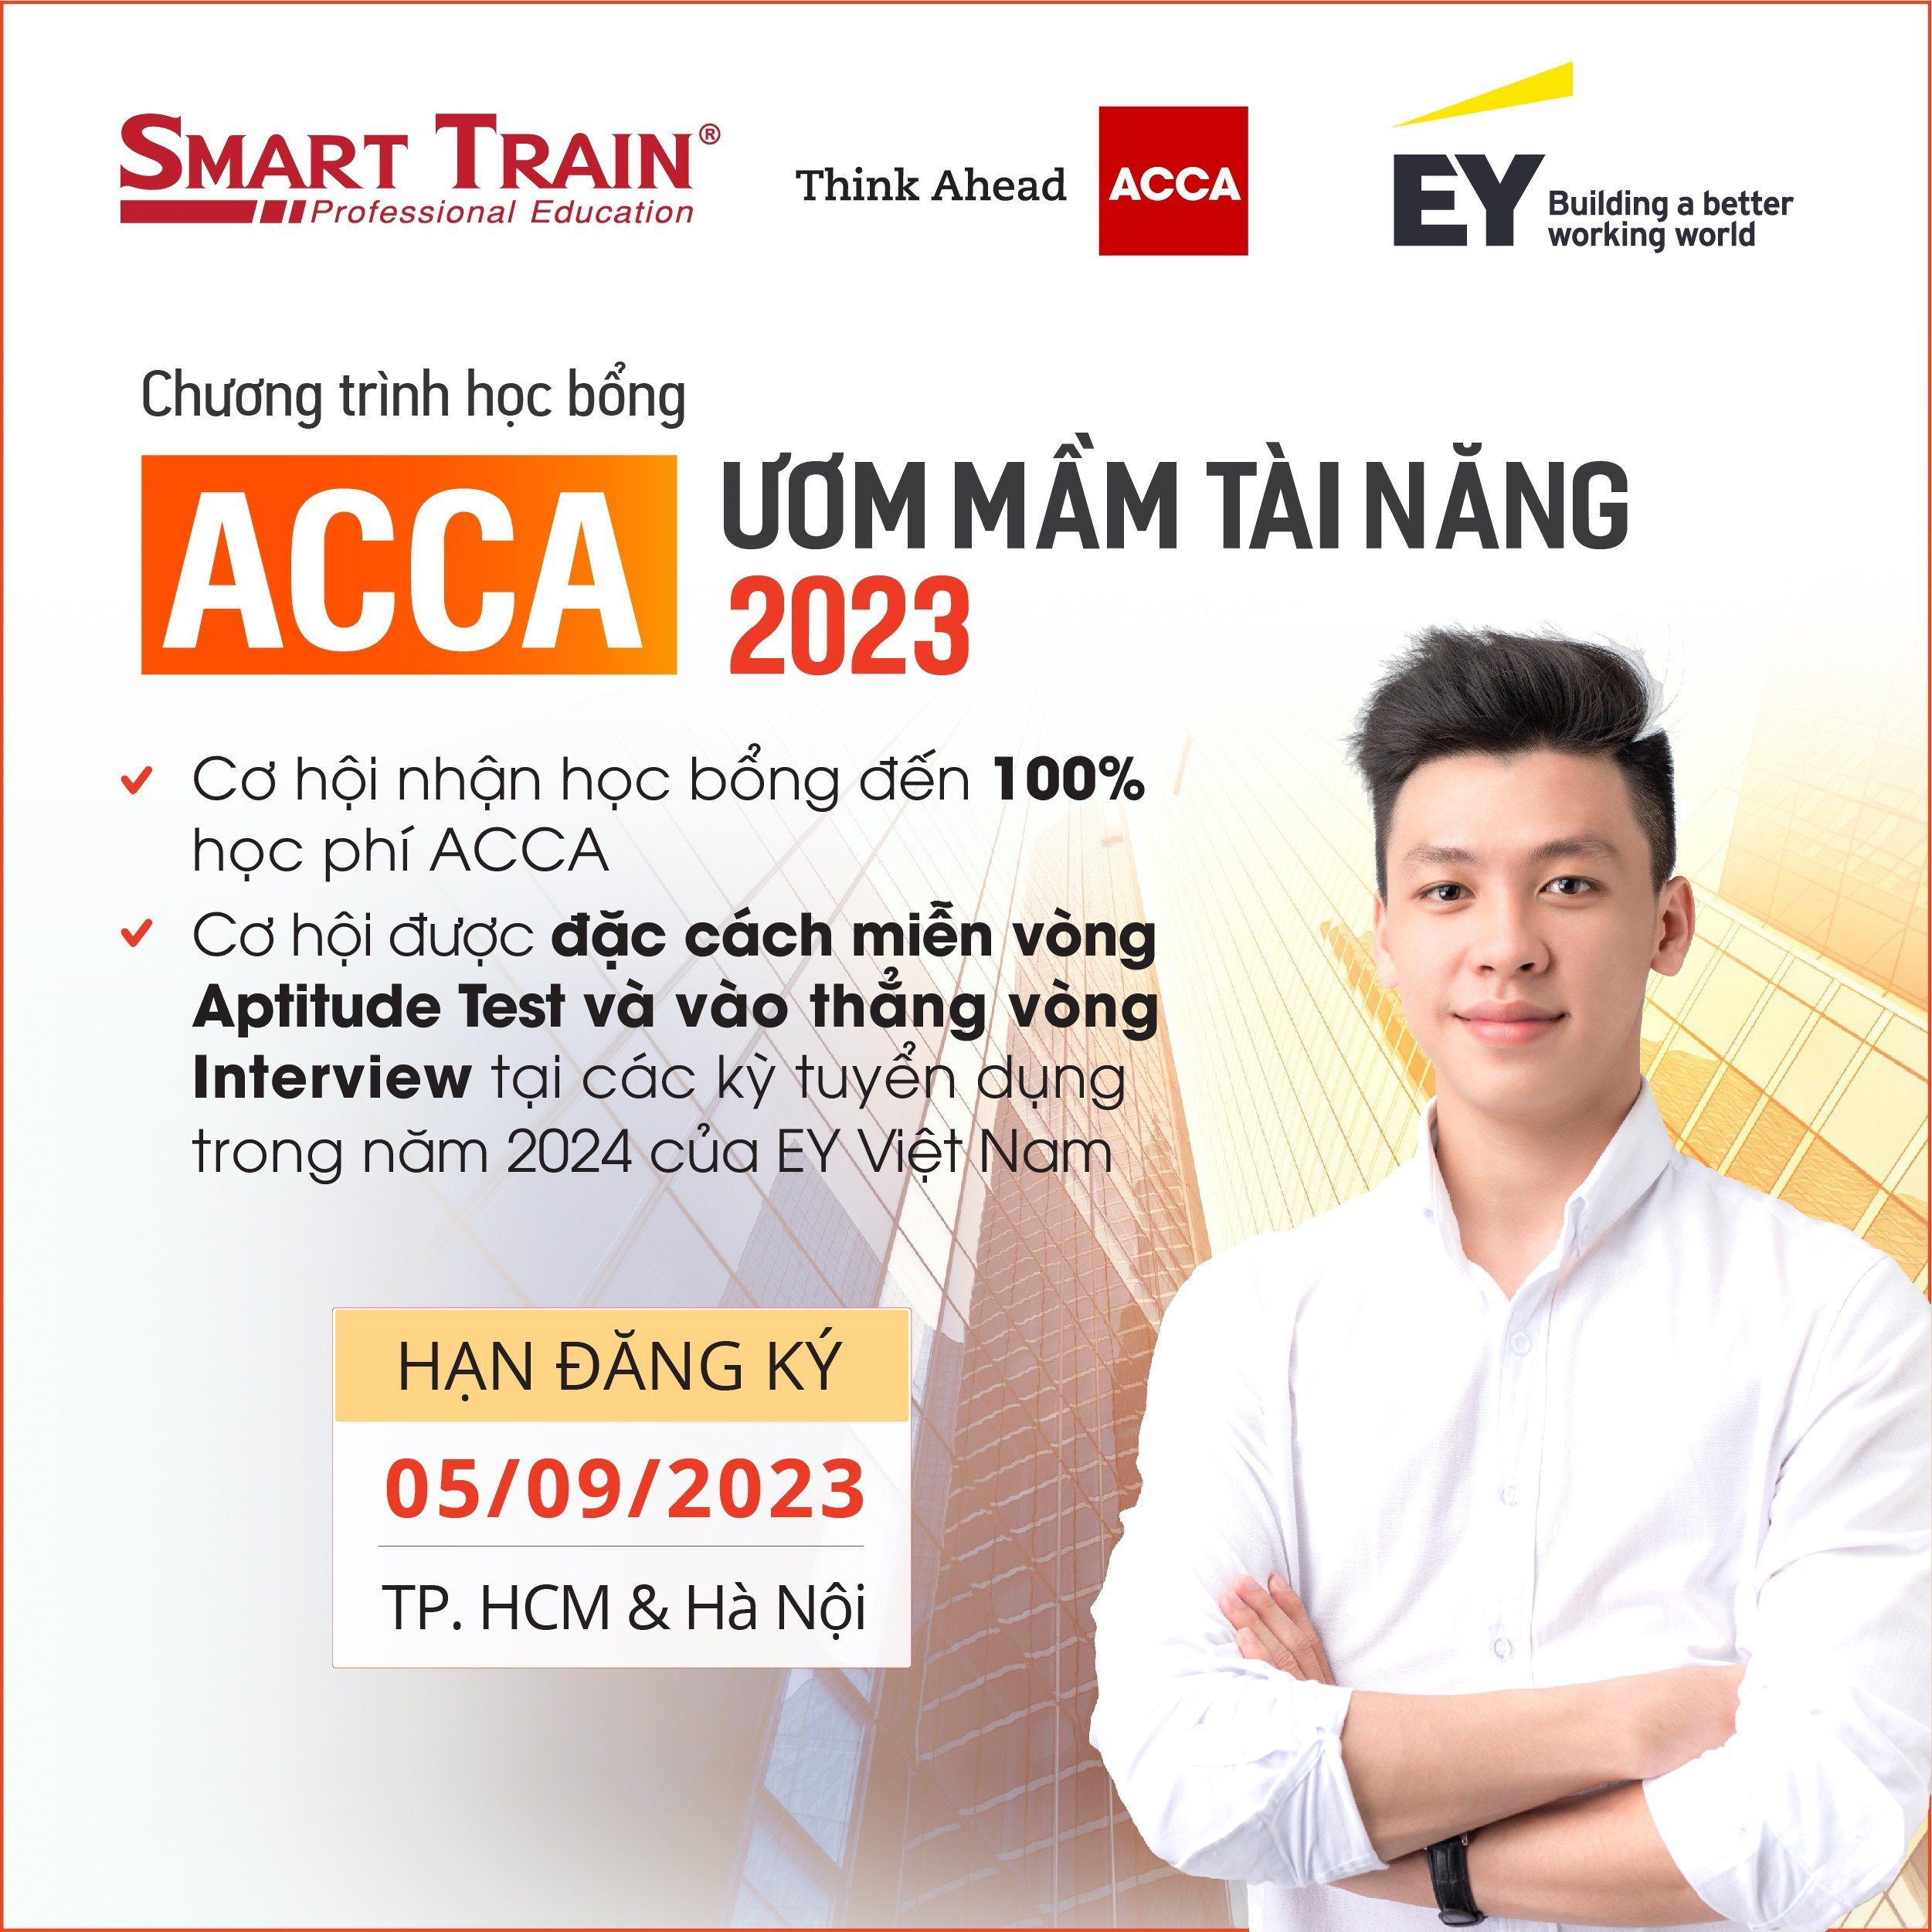 Học bổng ươm mầm Tài năng ACCA từ Smart Train 2023